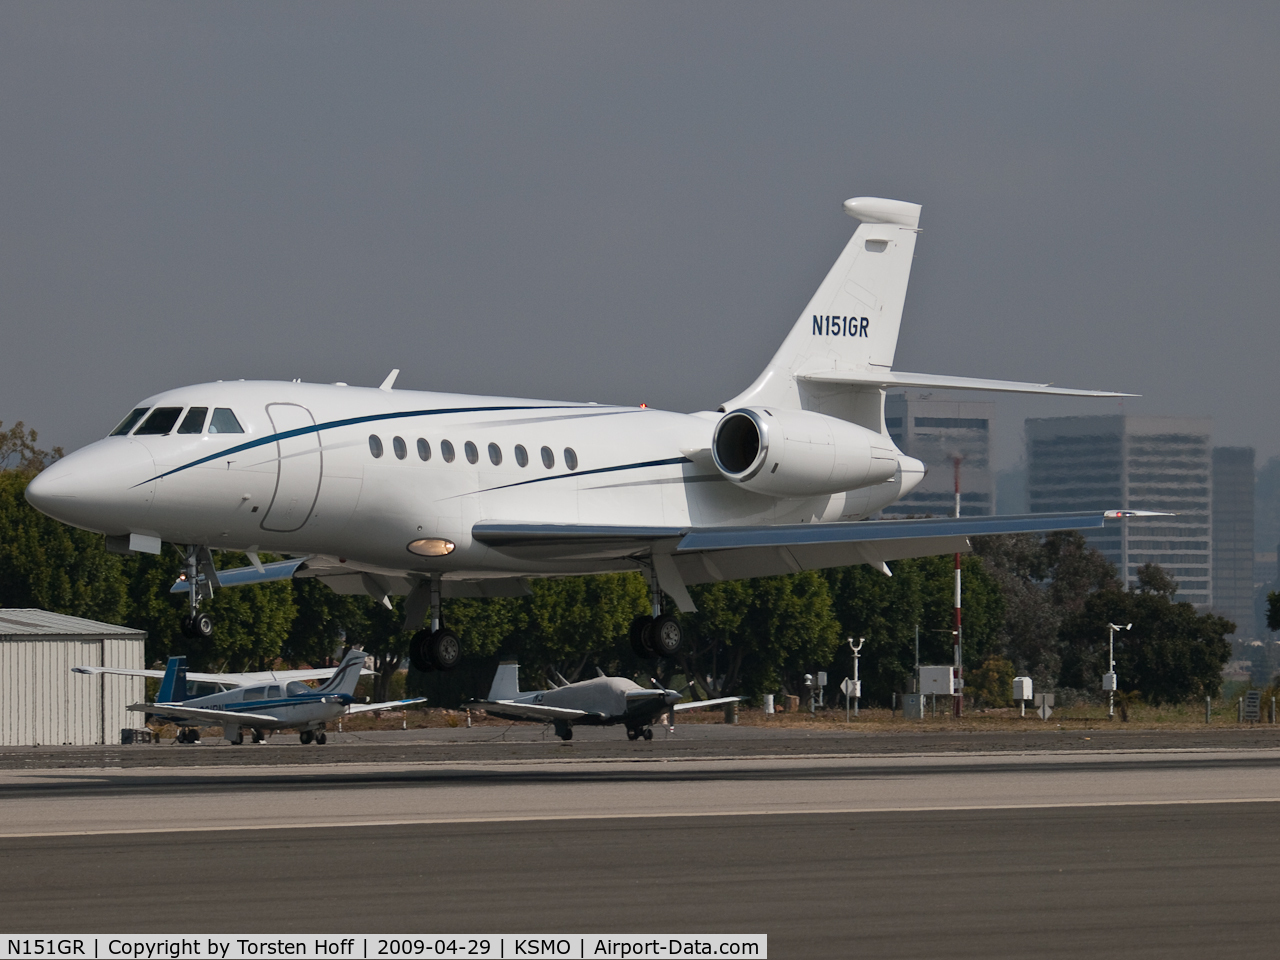 N151GR, 2001 Dassault Falcon 2000 C/N 151, N151GR arriving on RWY 21